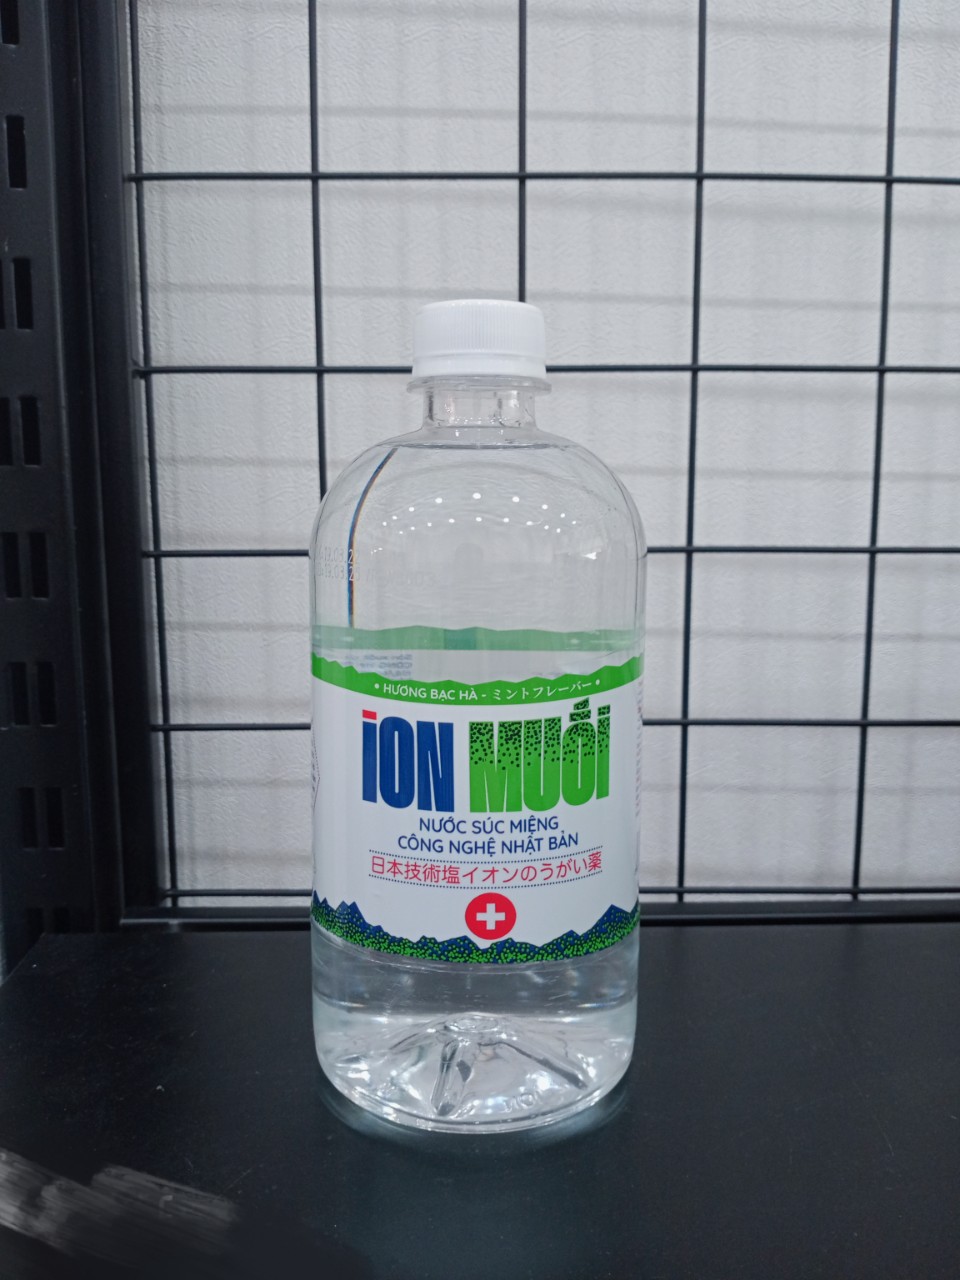 Nước súc miệng ion muối Nhật Bản 680ML